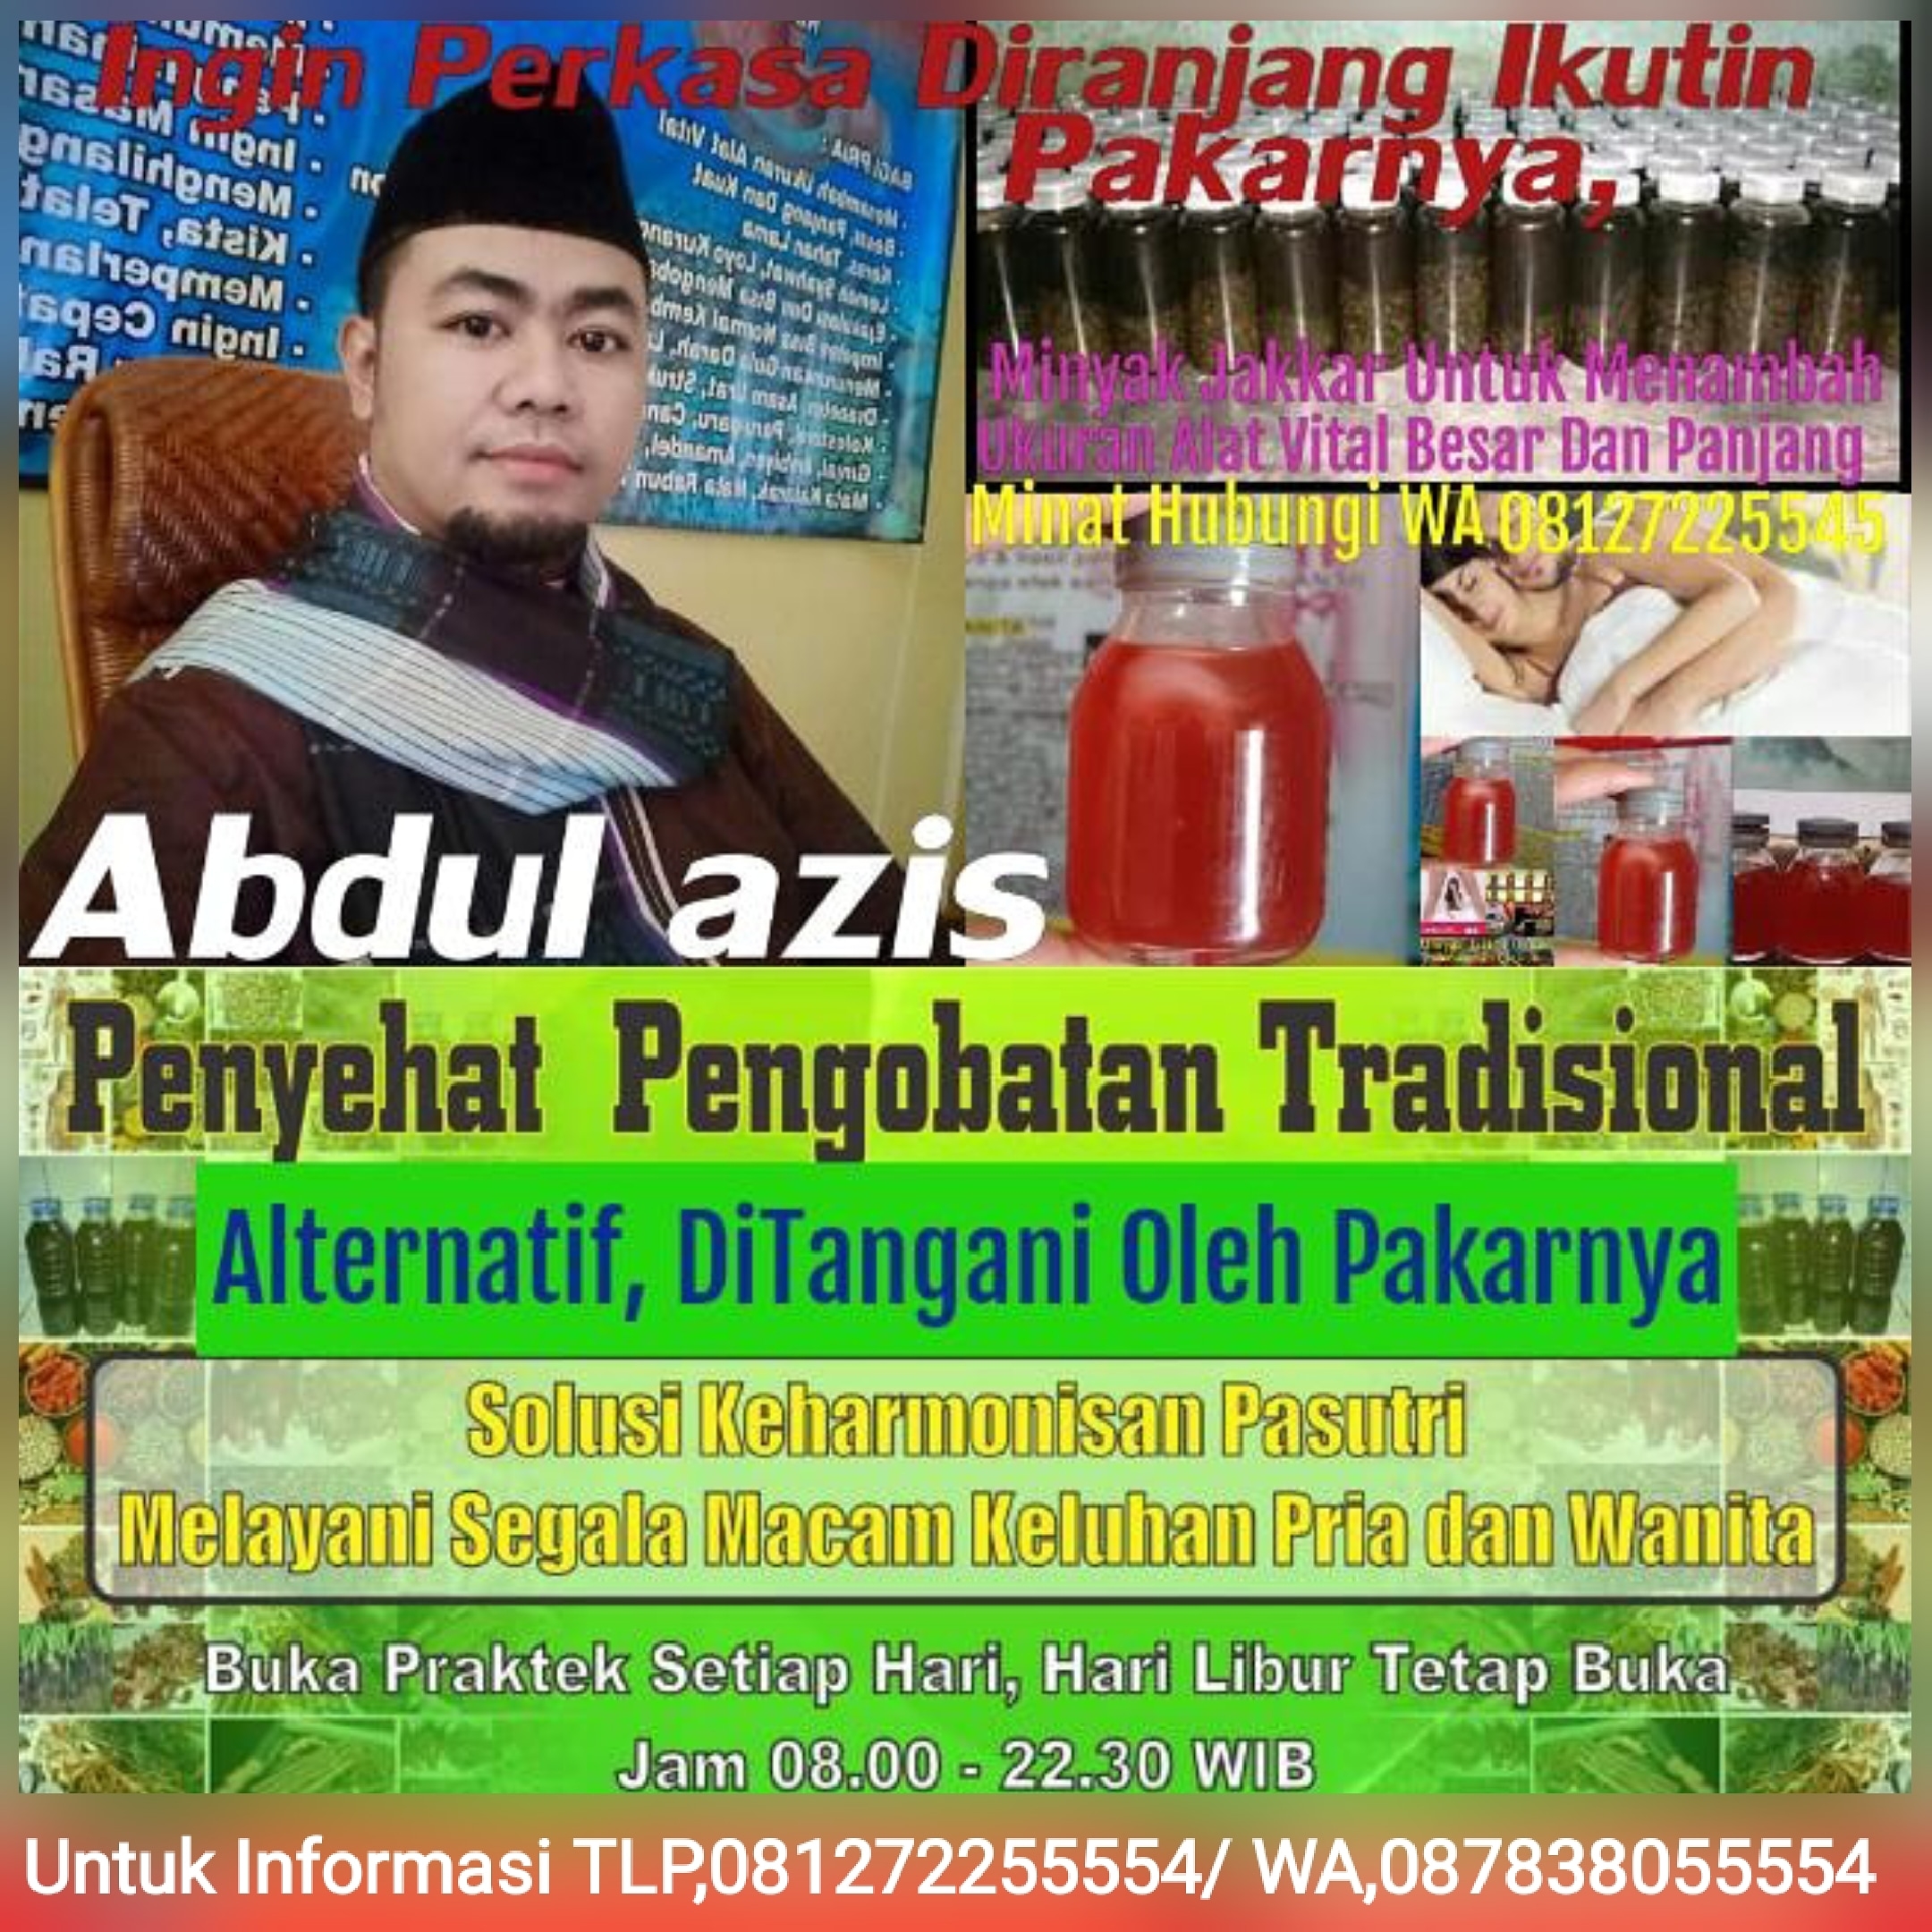 Pusat Pengobatan Tradisional Alternatif BPK Abdul azis user